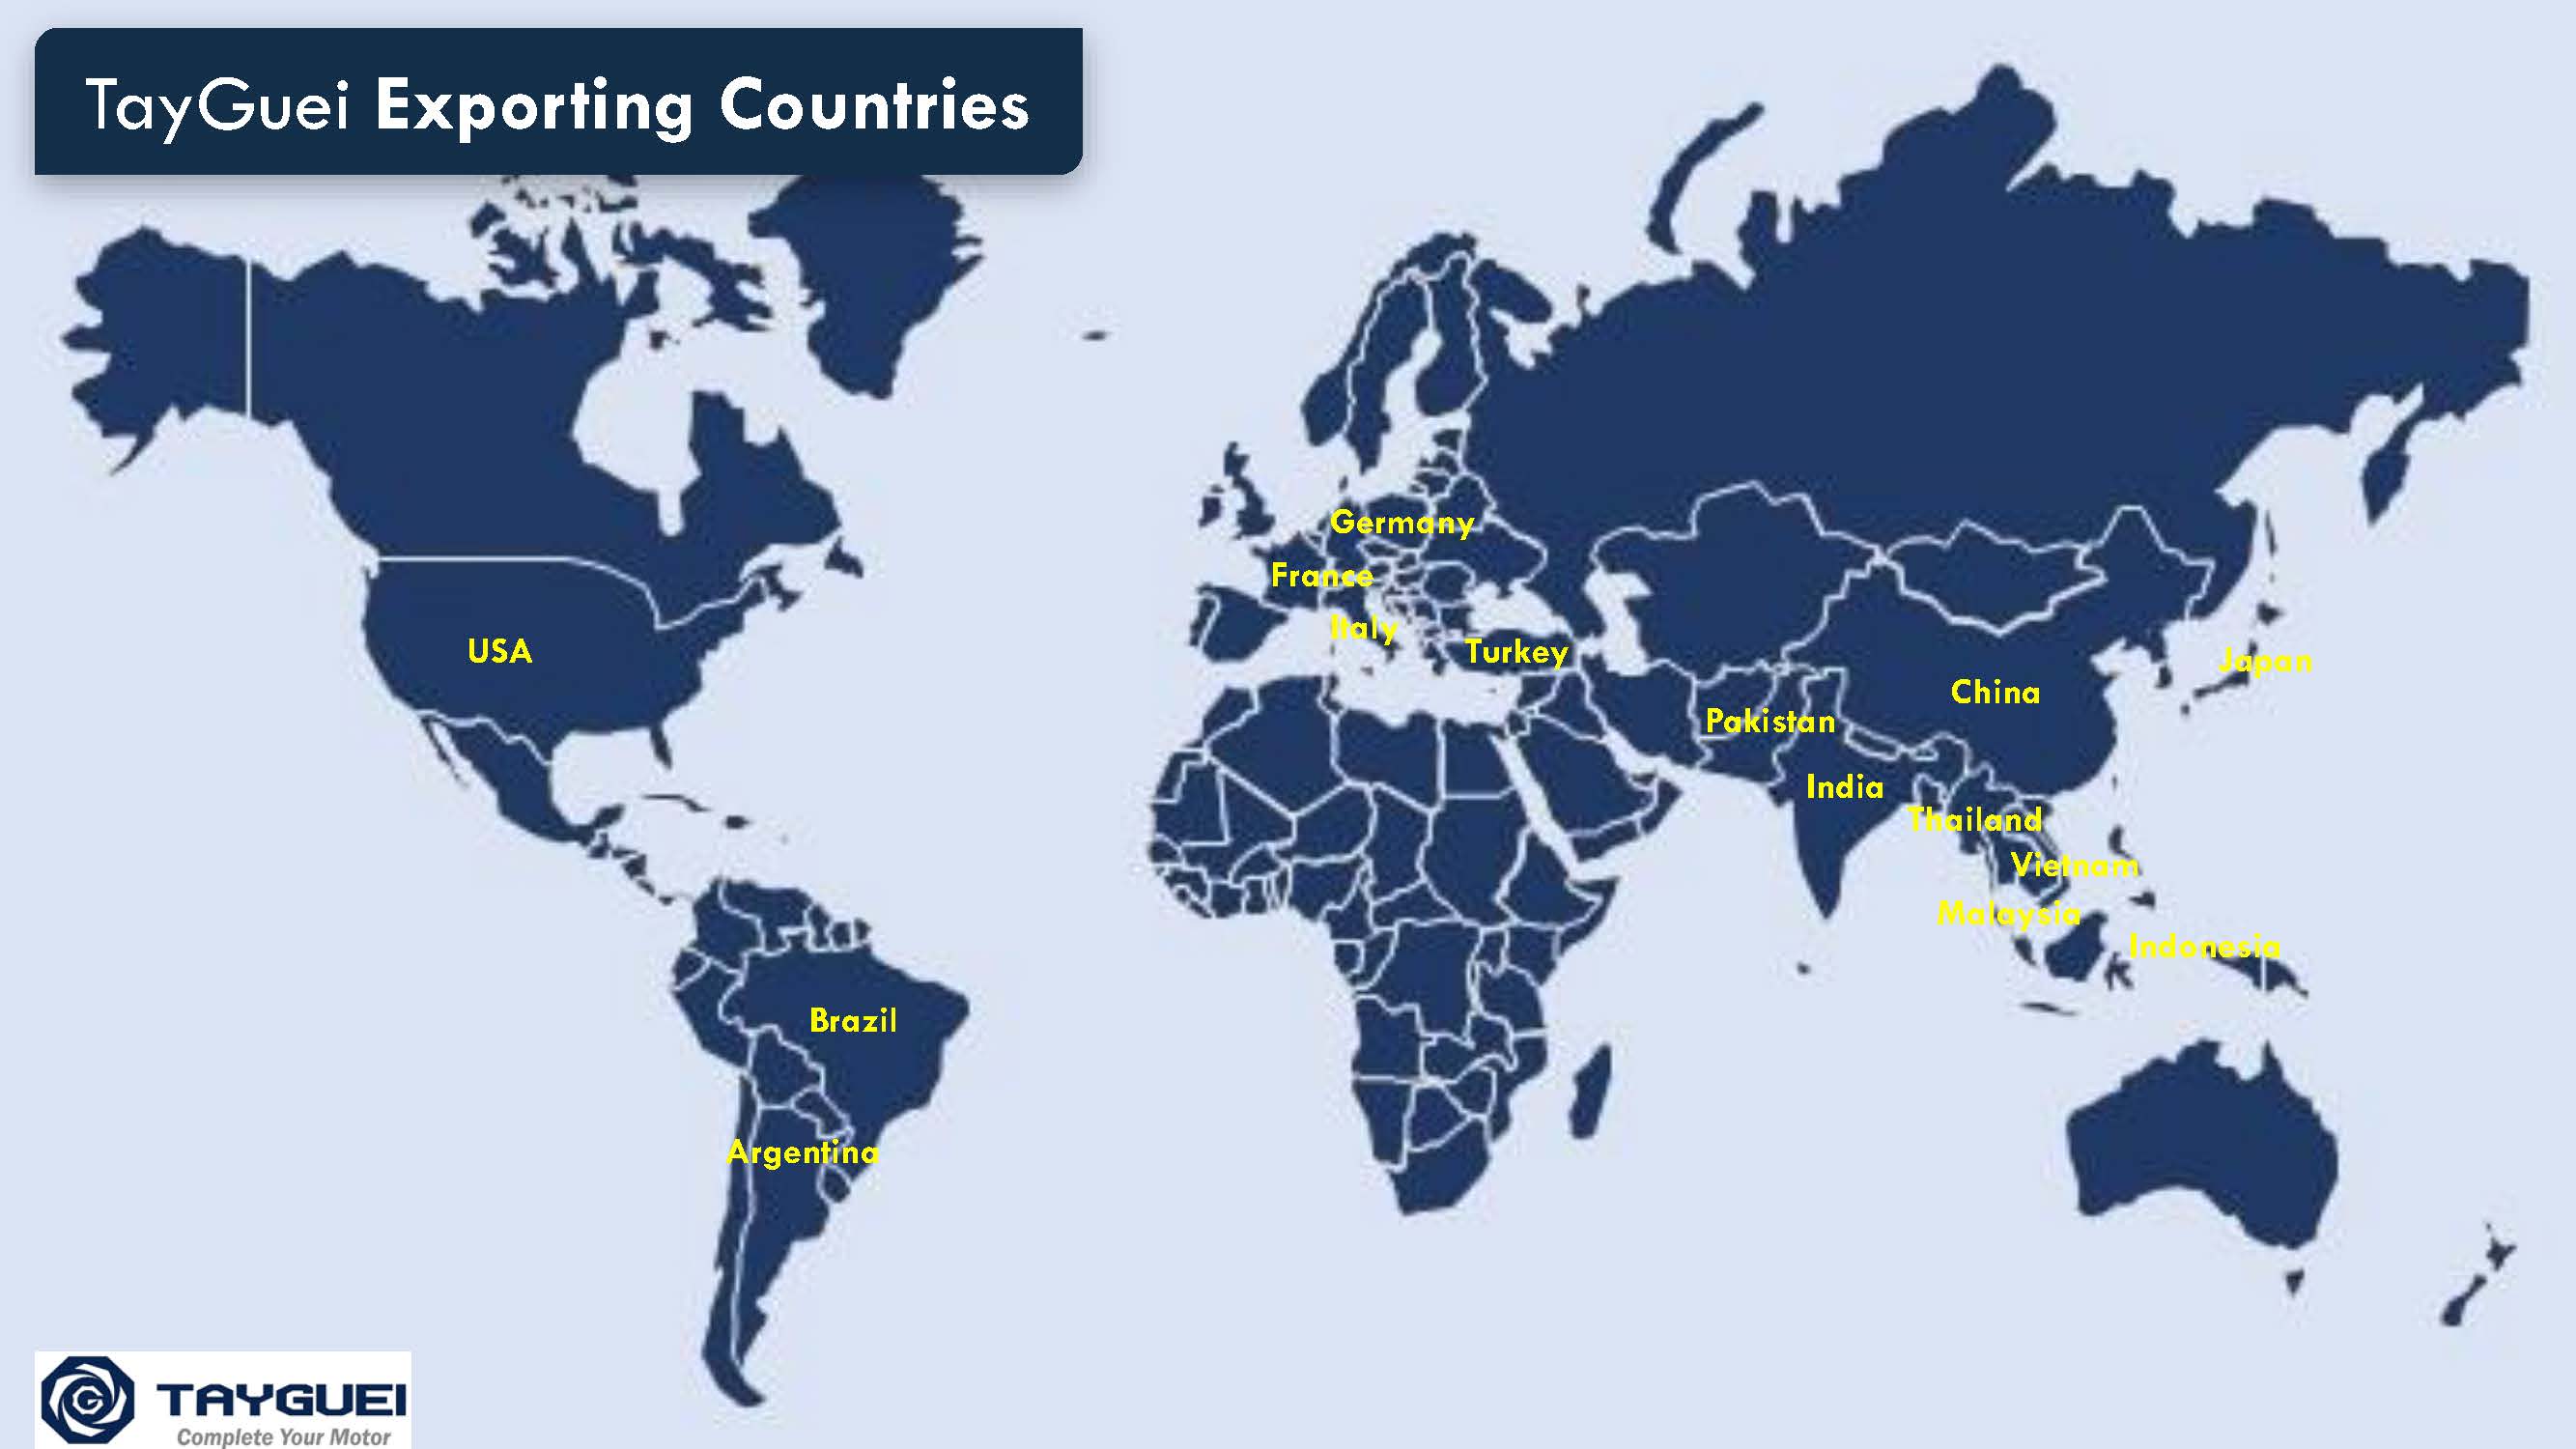 Продукция экспортируется в более чем 15 стран мира.